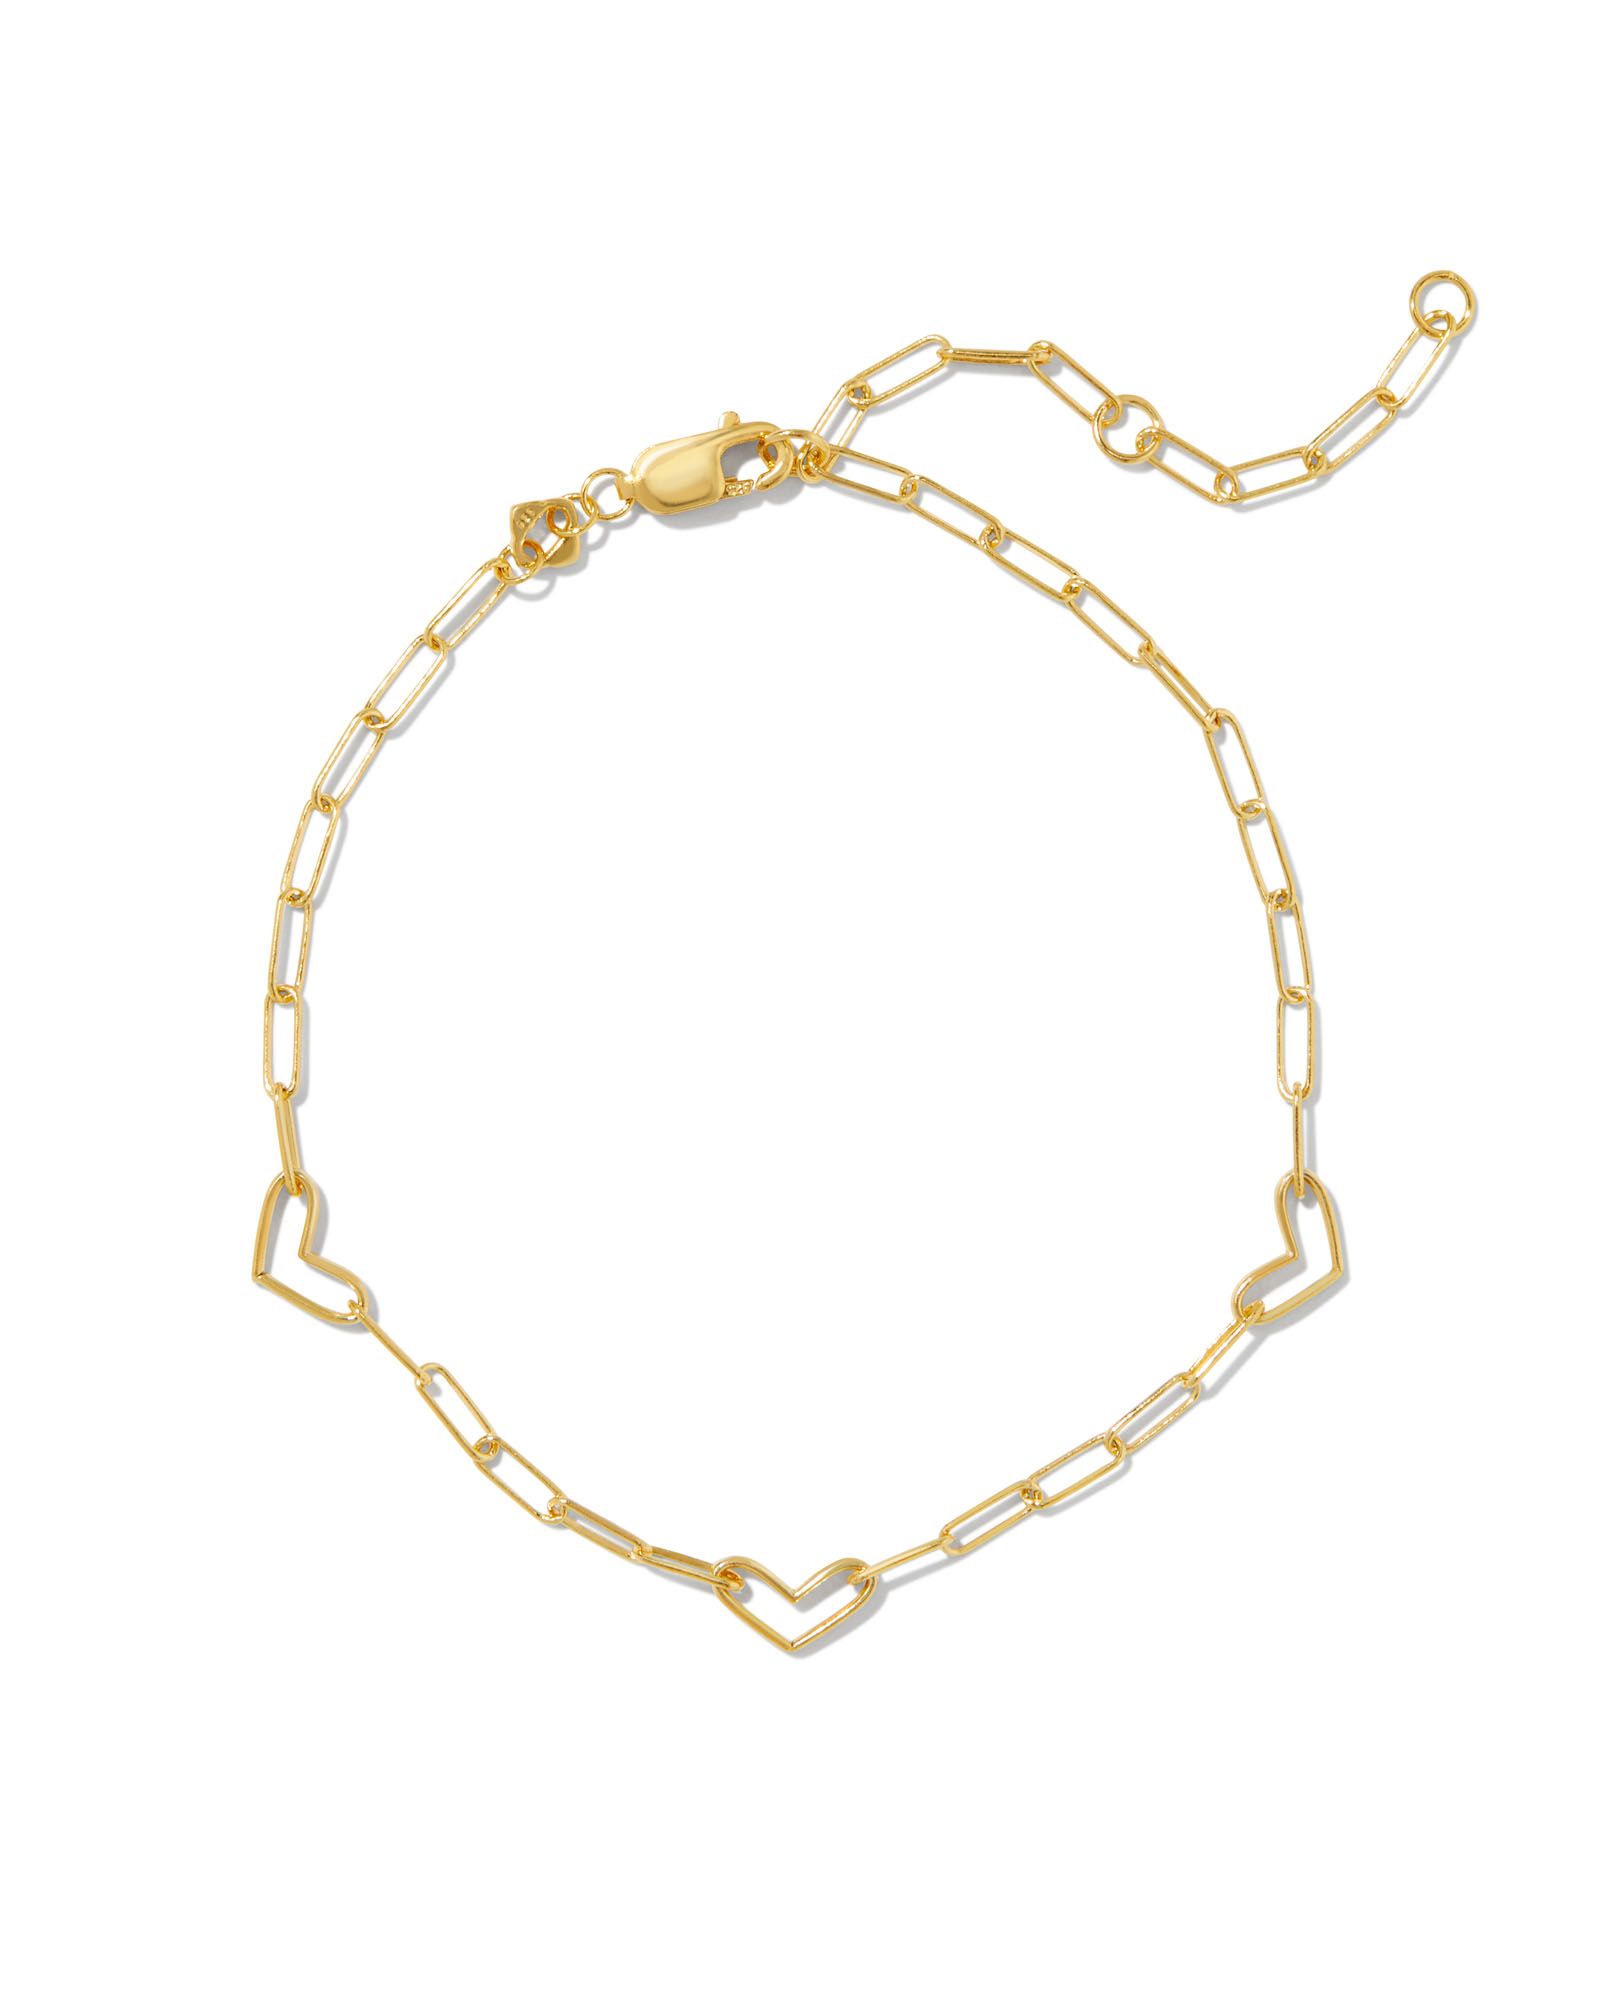 Kynlee Chain Bracelet in 18k Gold Vermeil | Kendra Scott